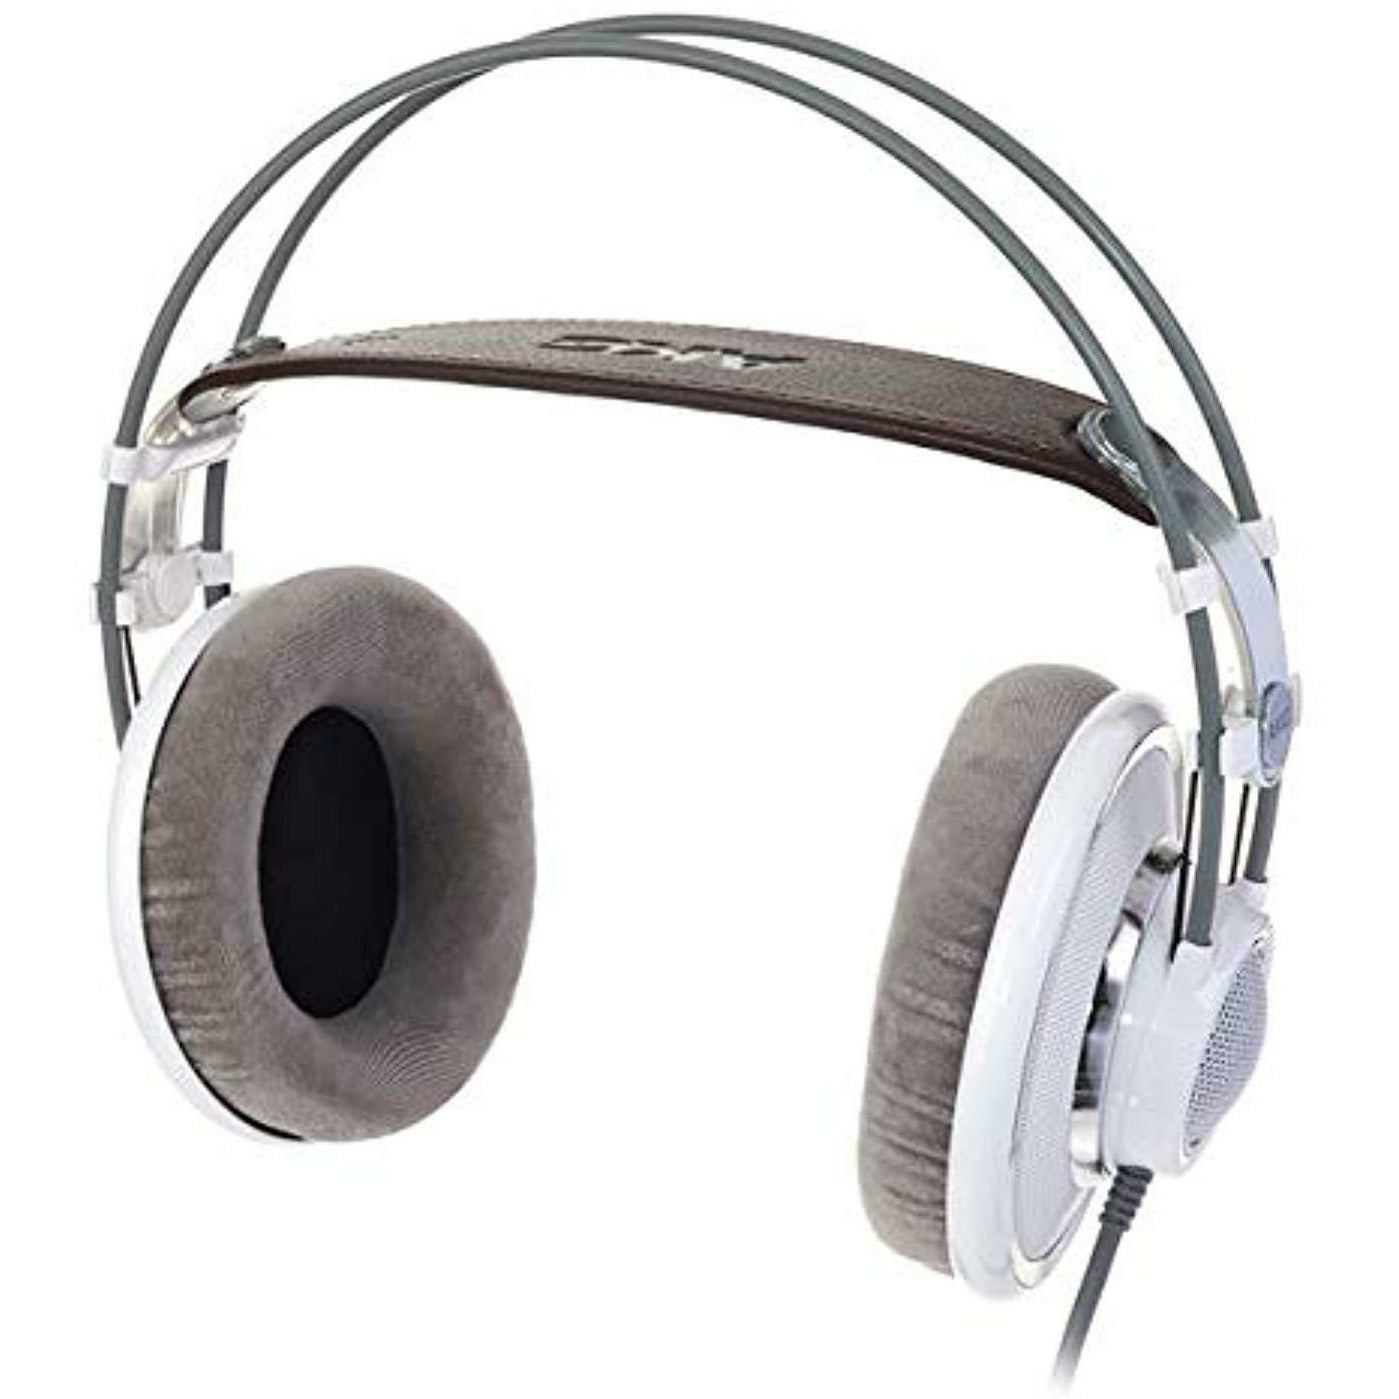 AKG K702 Studio Headphones « Auriculares